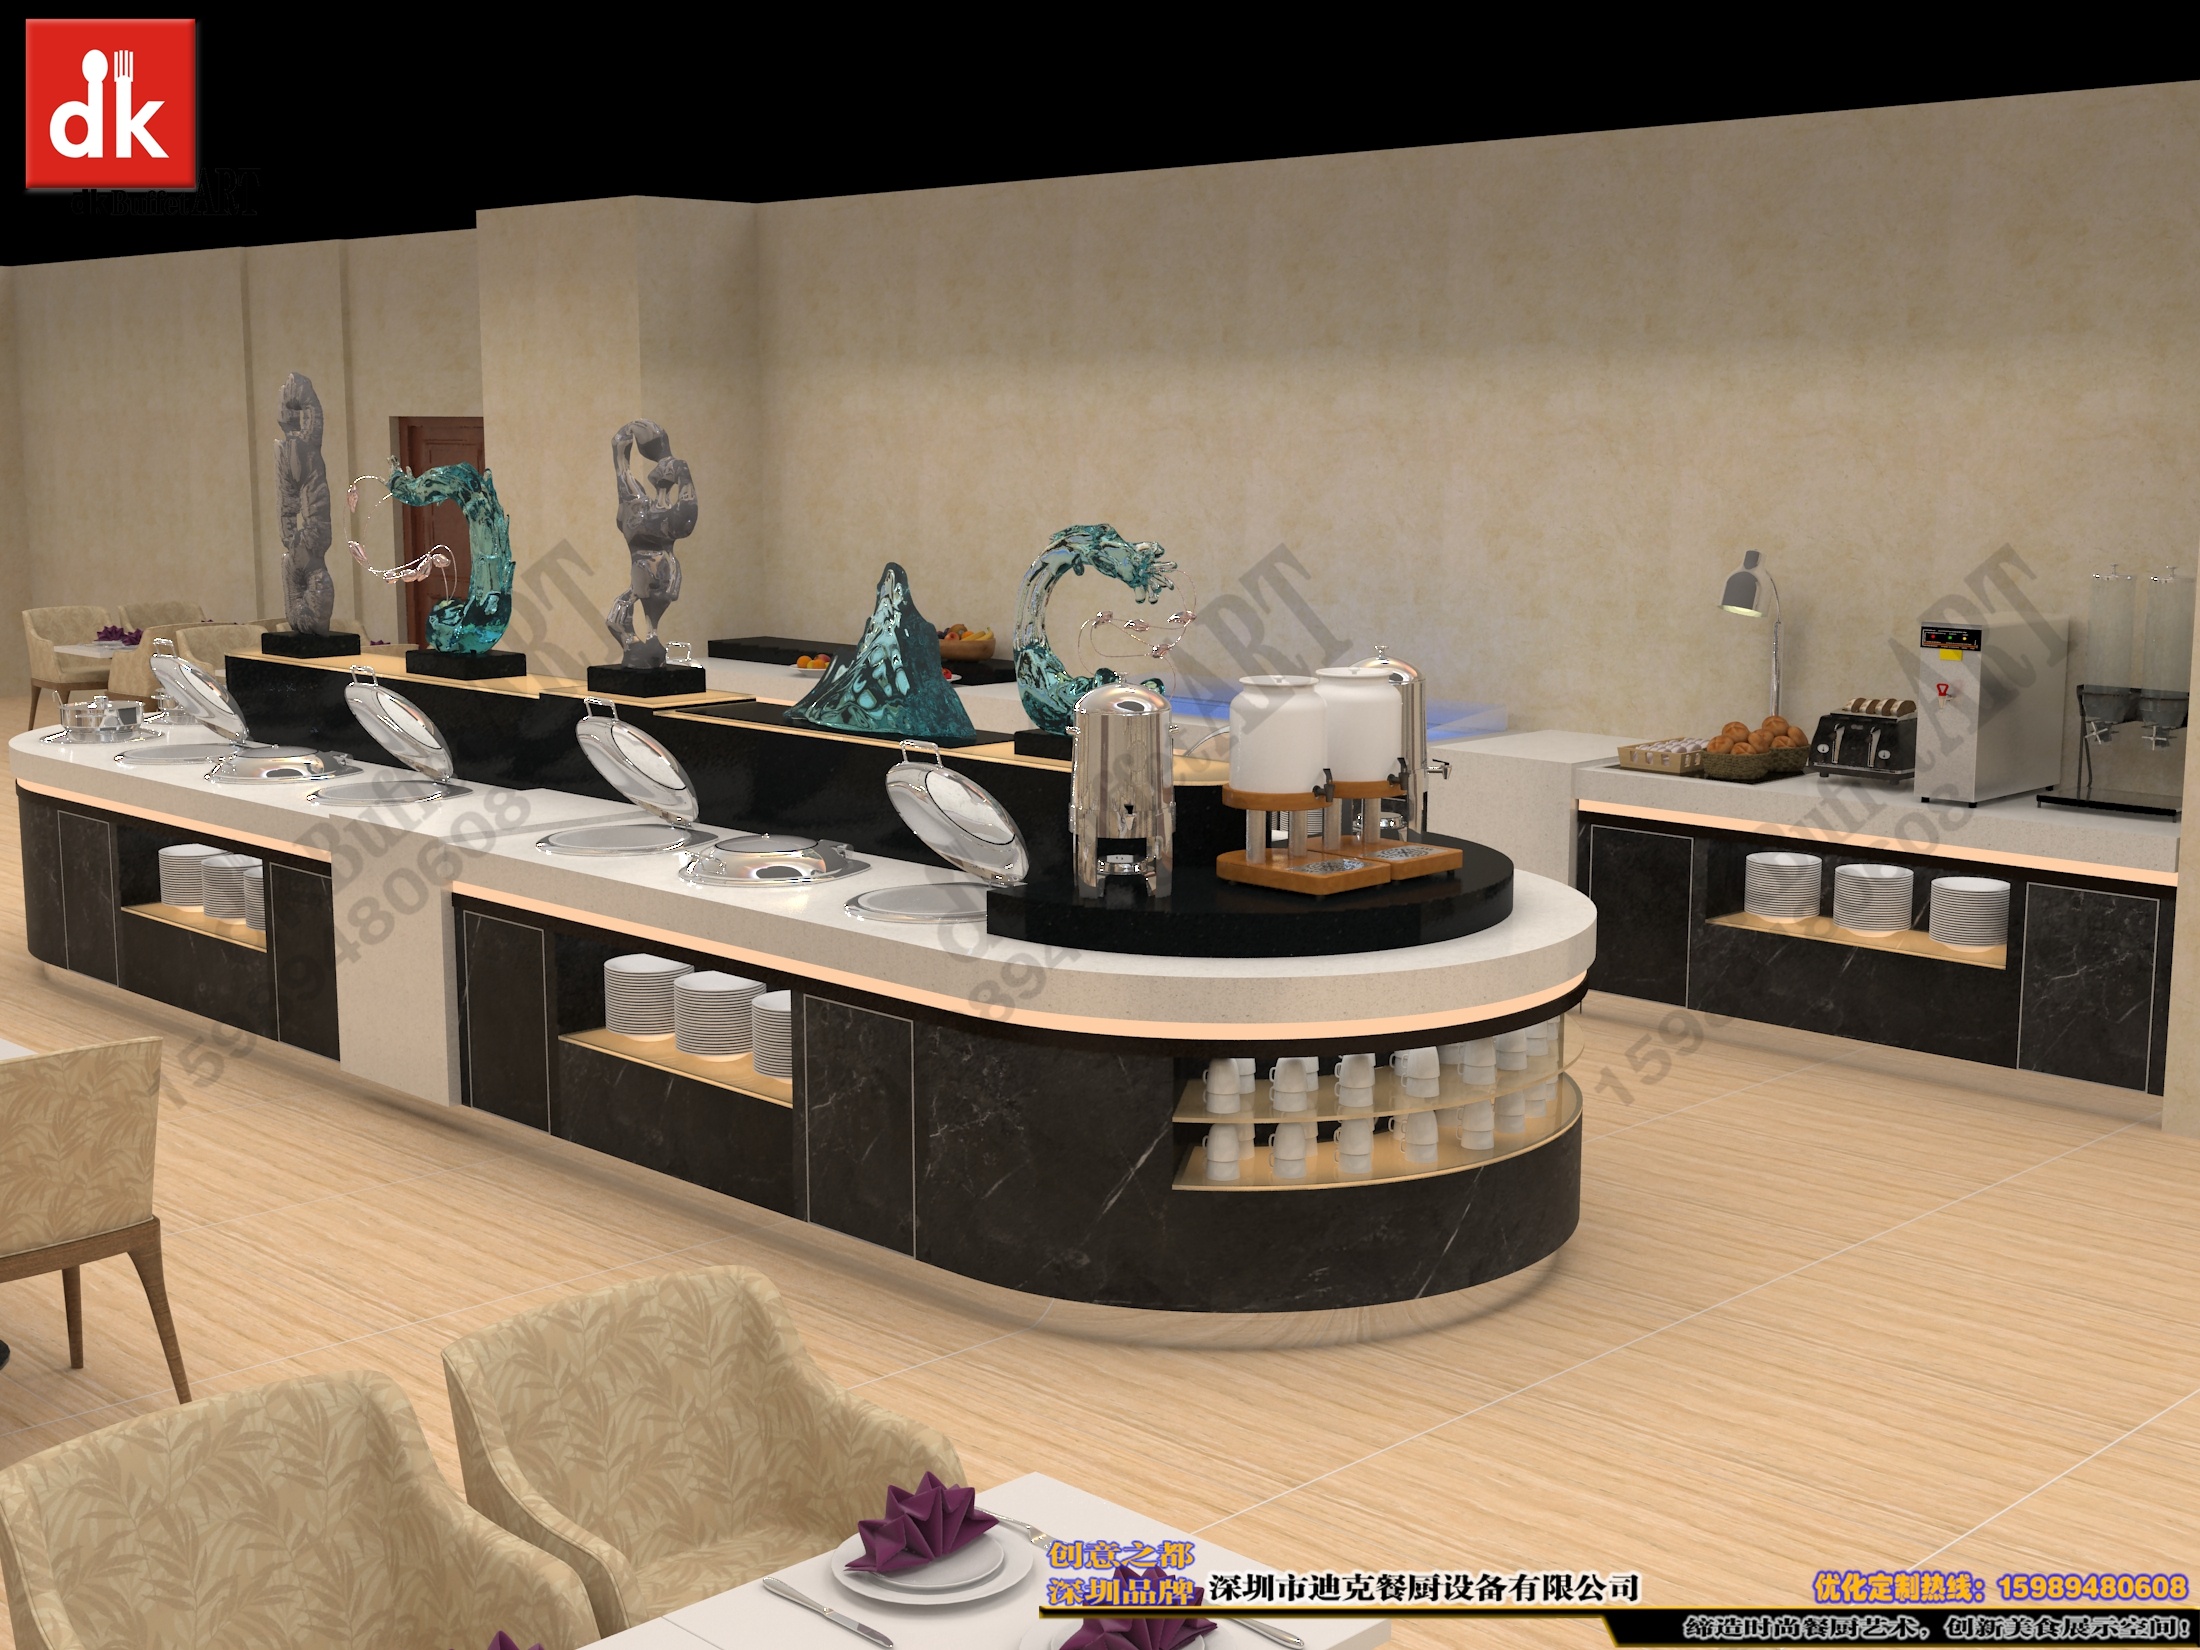 25-12美食城餐厅明档20113d模型下载-【集简空间】「每日更新」